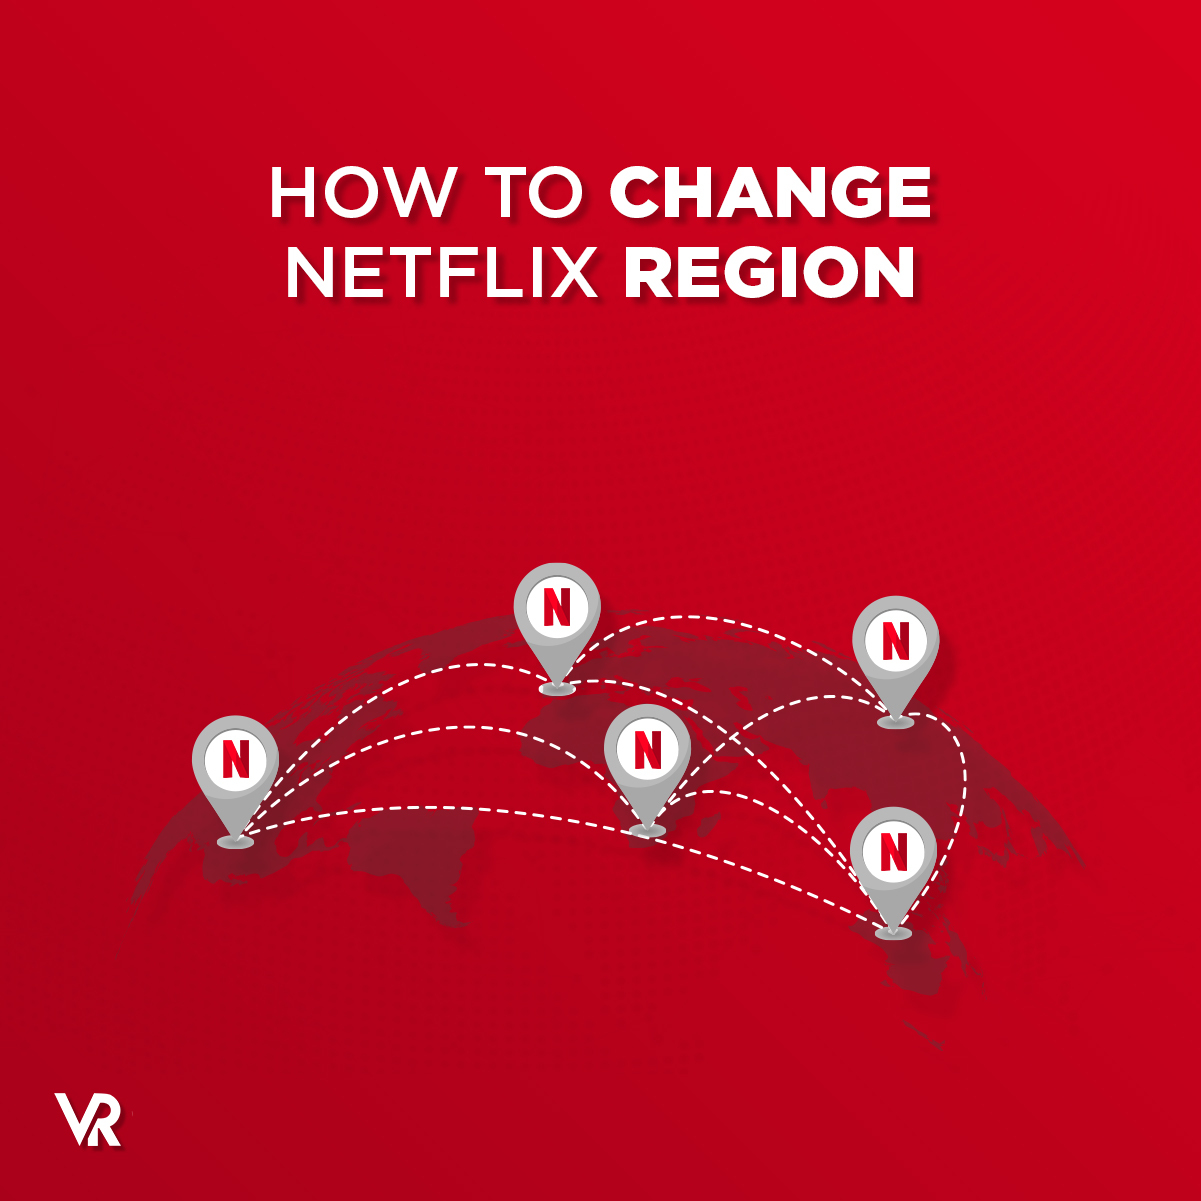 Change-Netflix-Region-Featured-Image